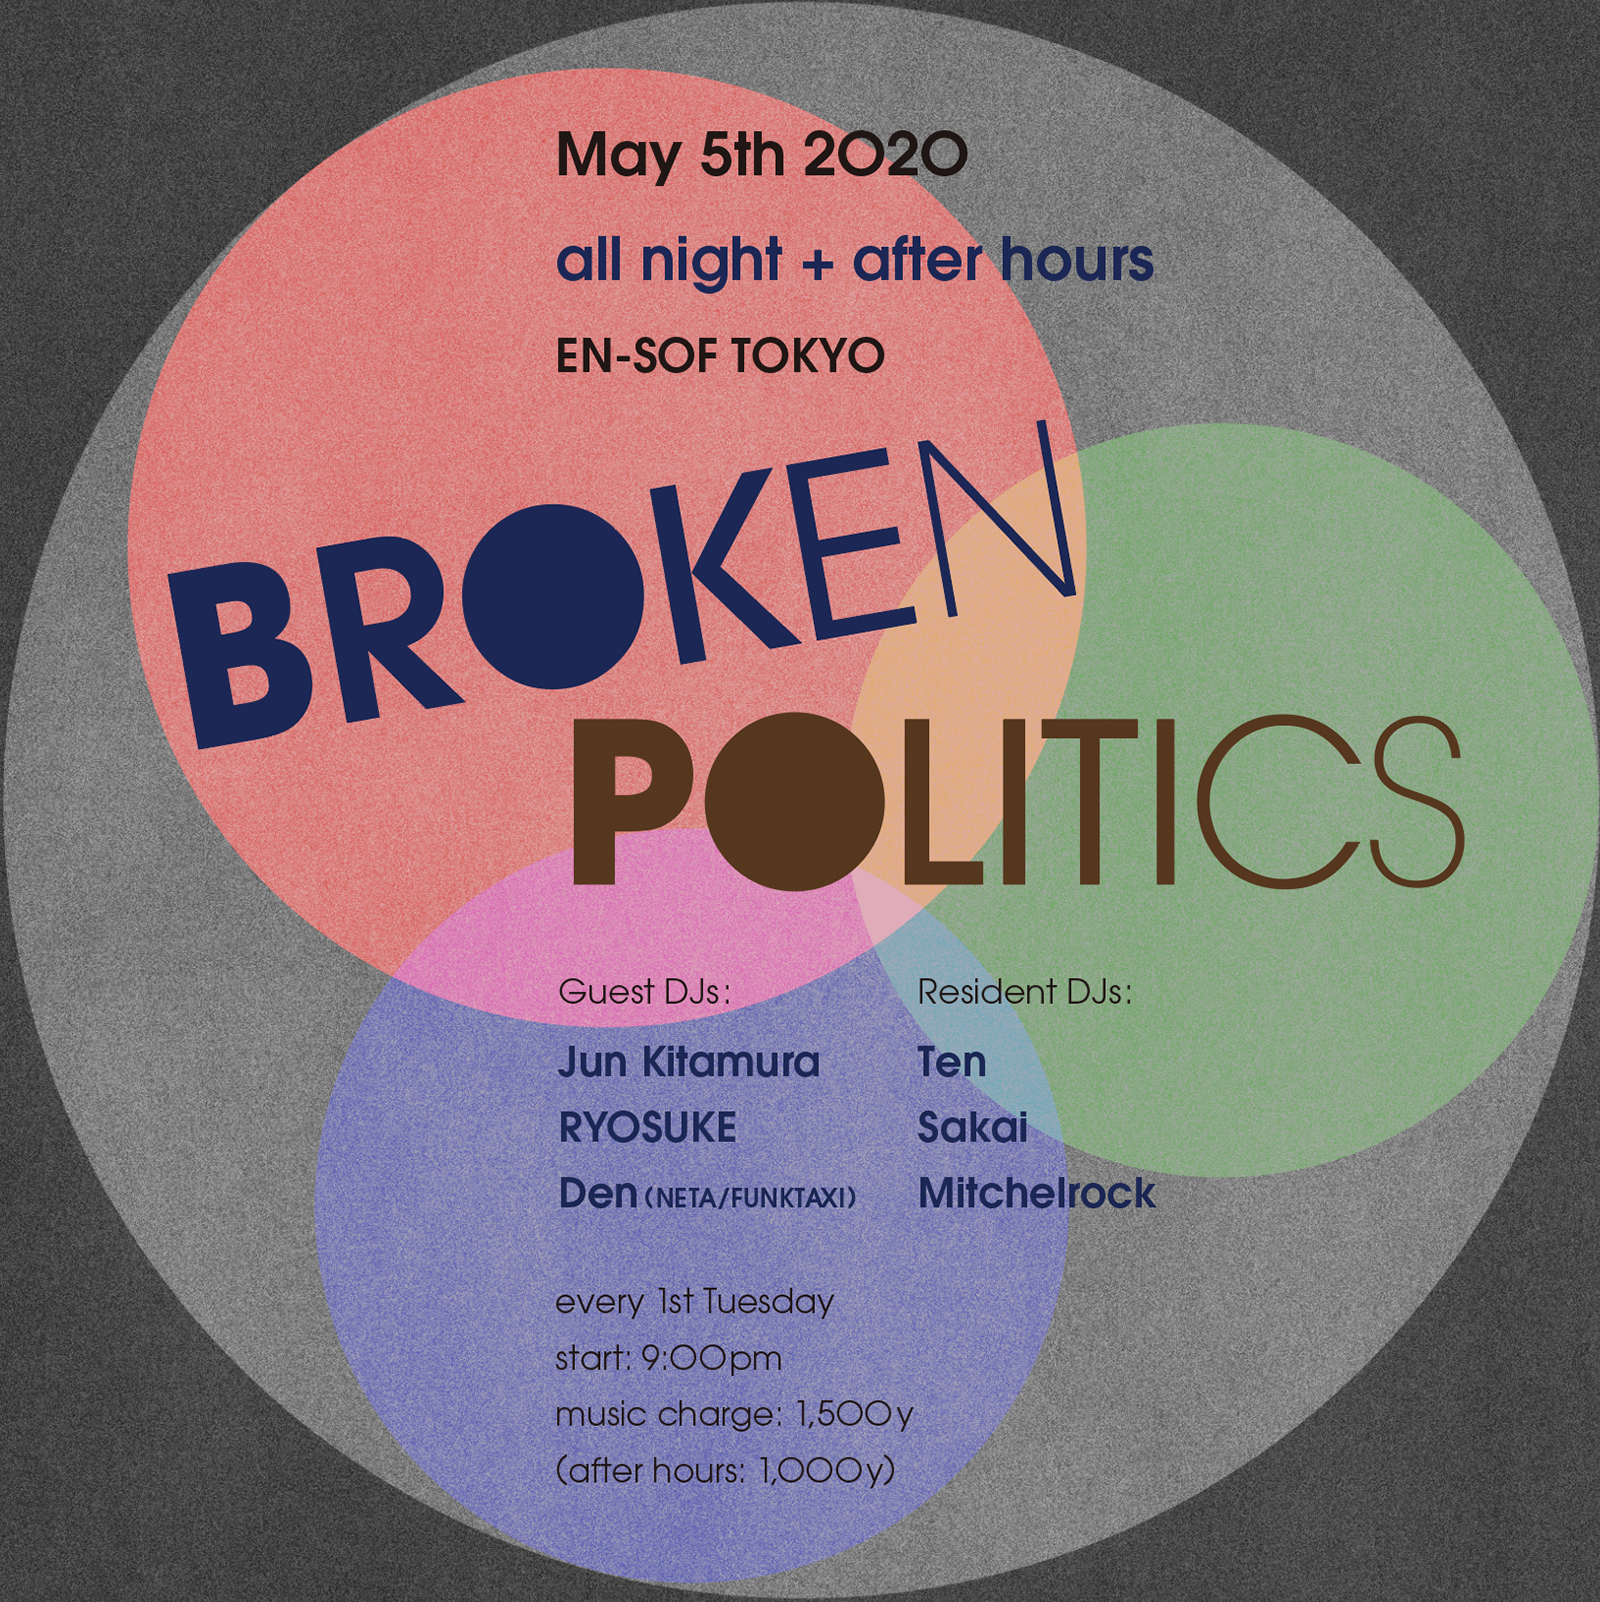 Broken Politics “Flyer”